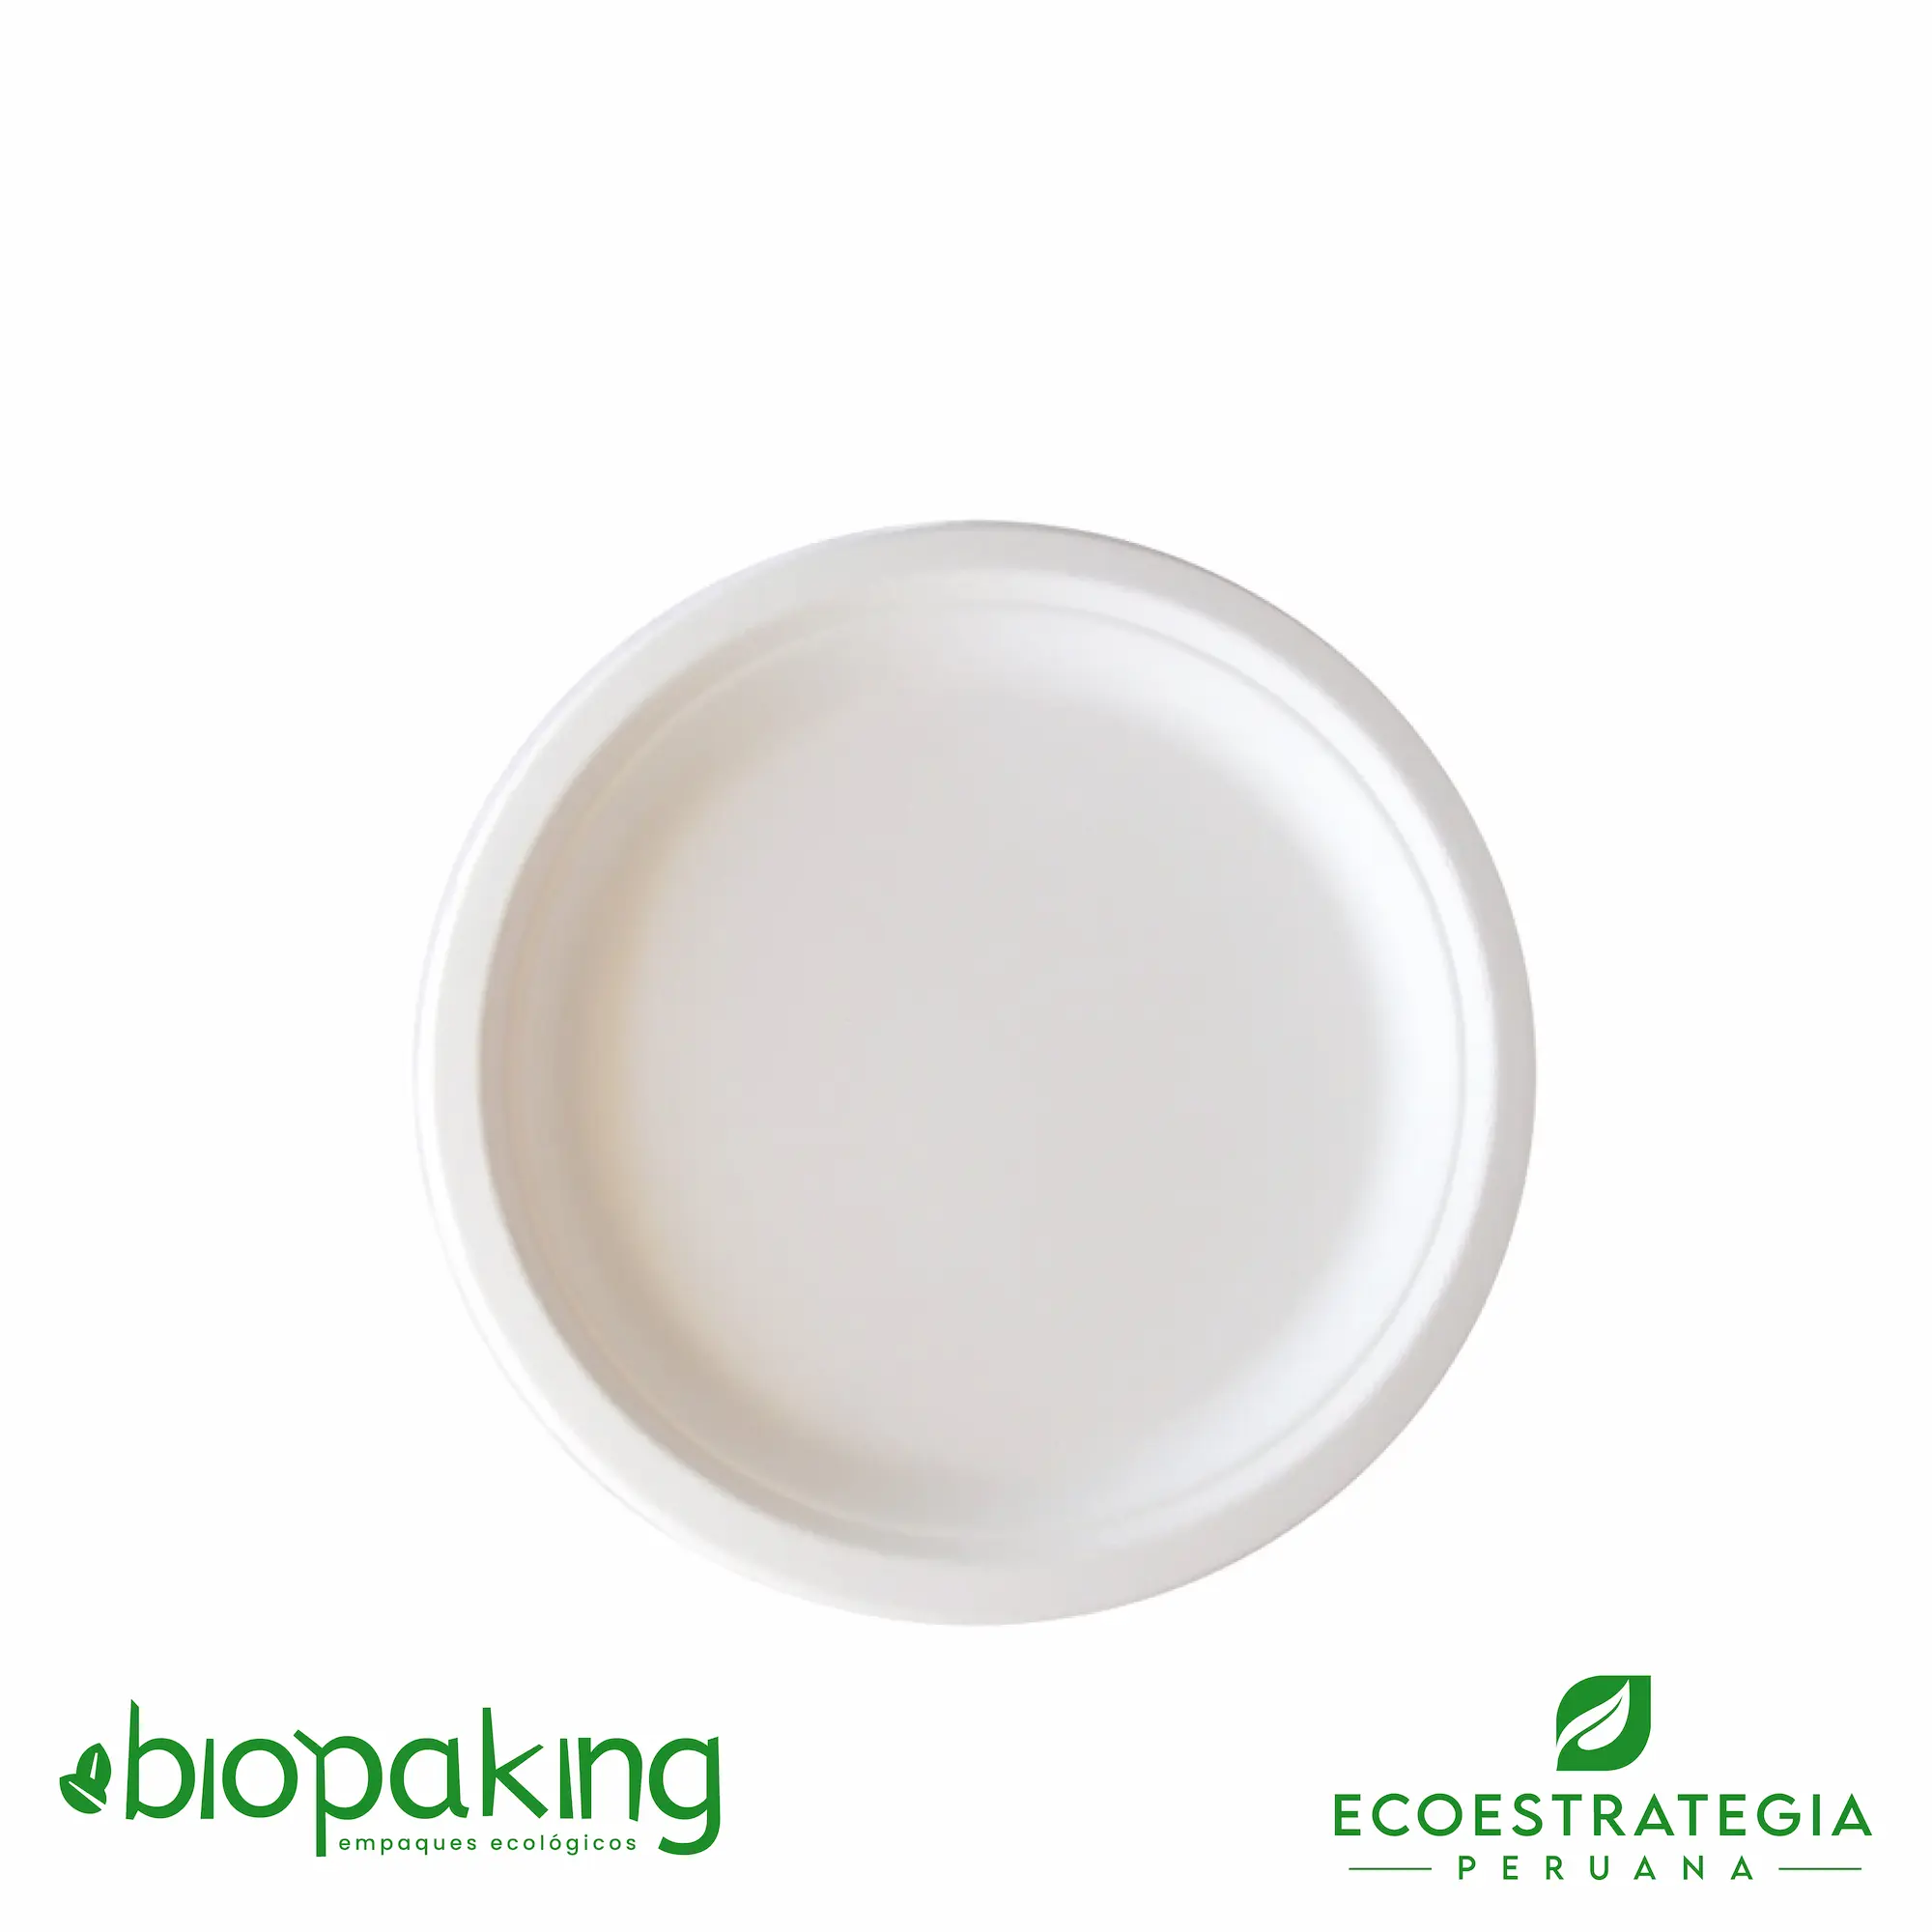 Es un plato biodegradable de 22 cm, fabricado a base de fibra de caña de azúcar. Apto para entradas, postres, tortas, hamburguesa y más. Contamos con stock de platos biodegradables, también los encuentras en las medidas. La mejor calidad en descartables biodegradables.